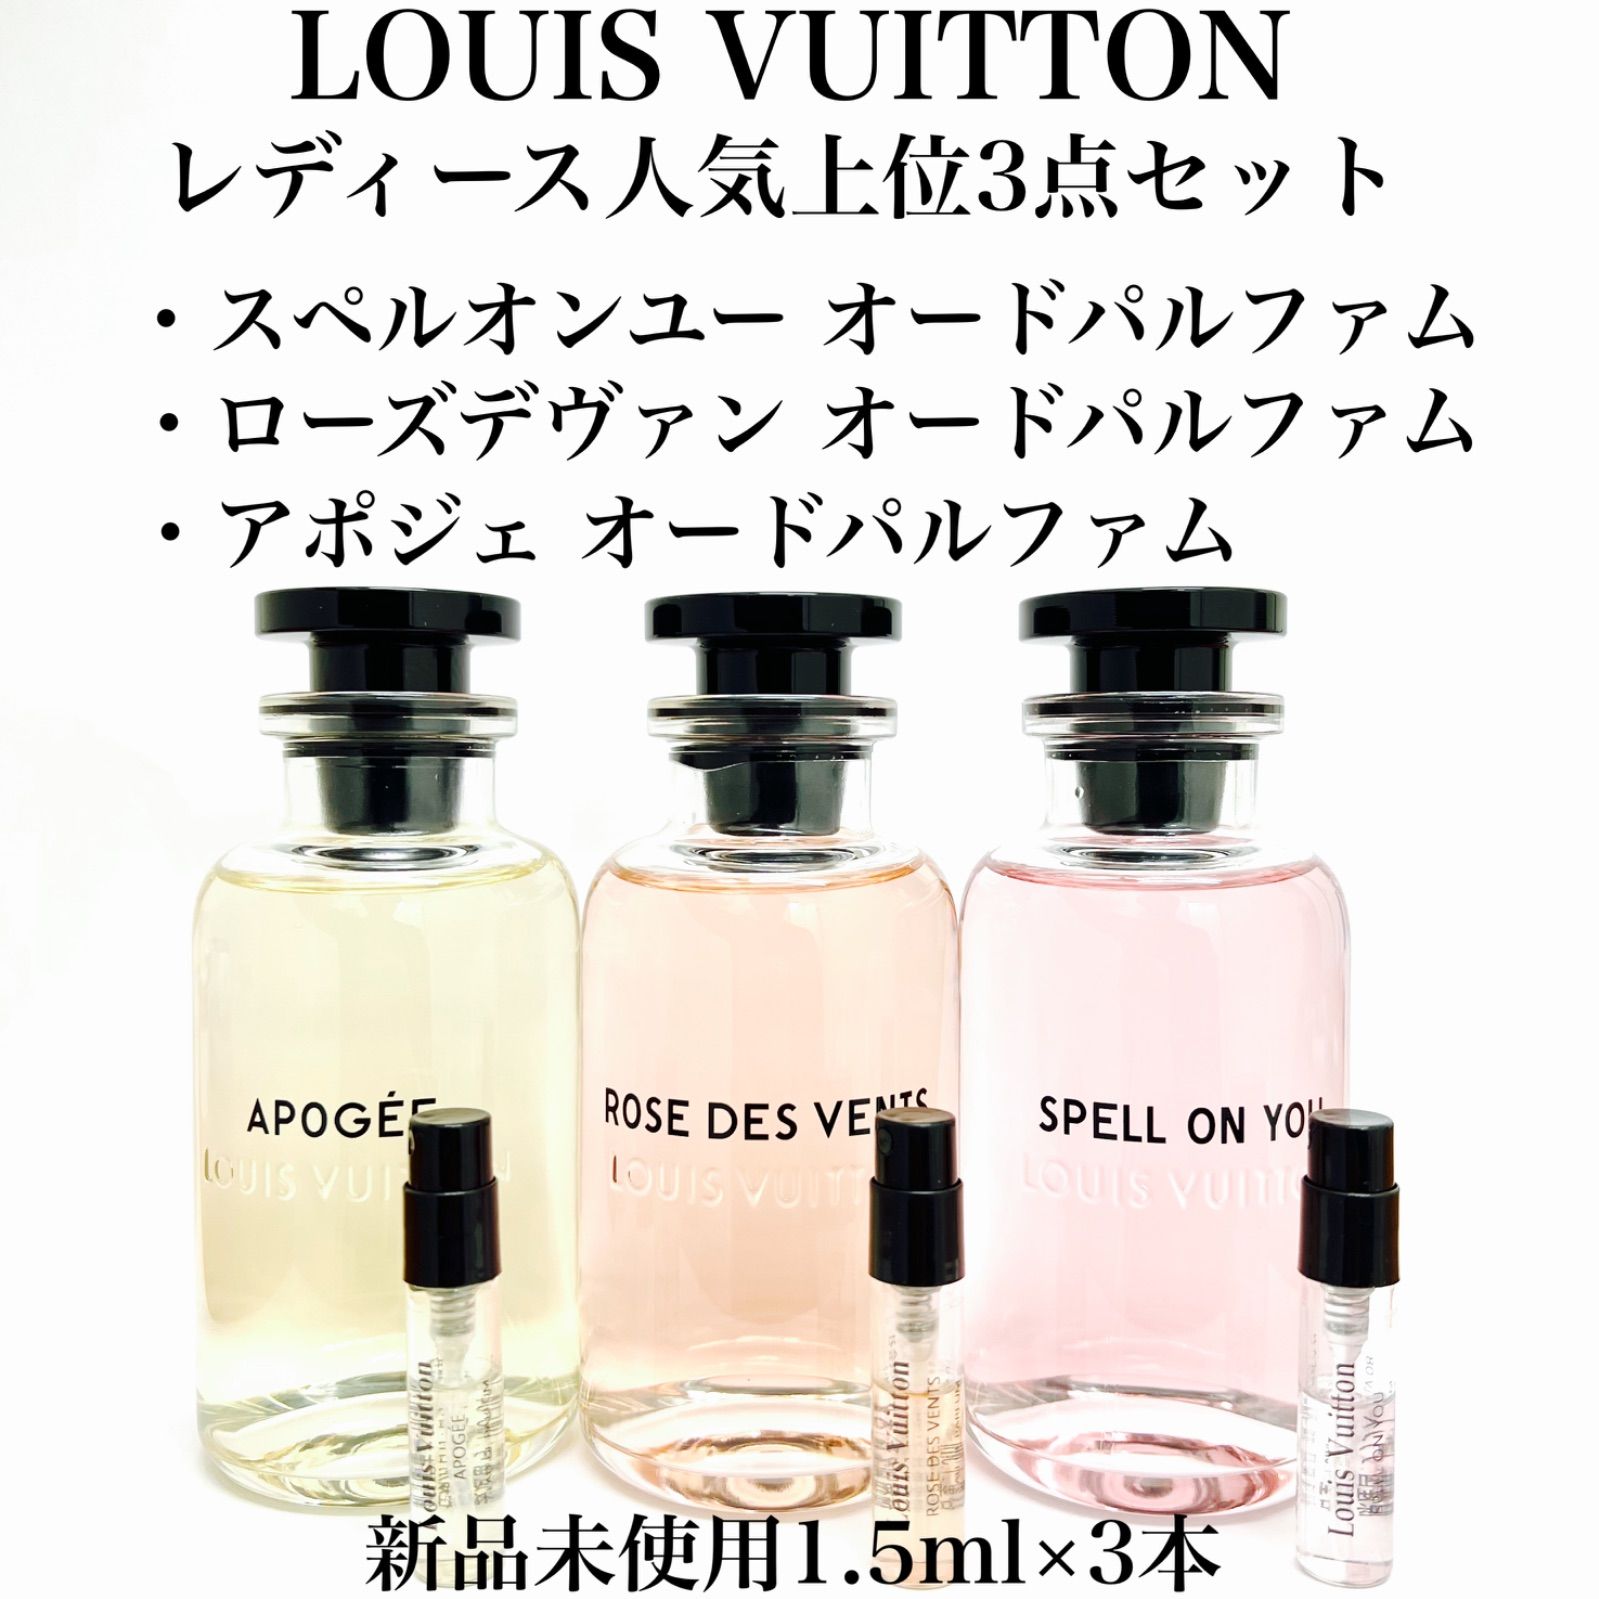 新品 SPELL ON YOU ルイヴィトン 香水 サンプル 2ml 2本セット - 香水